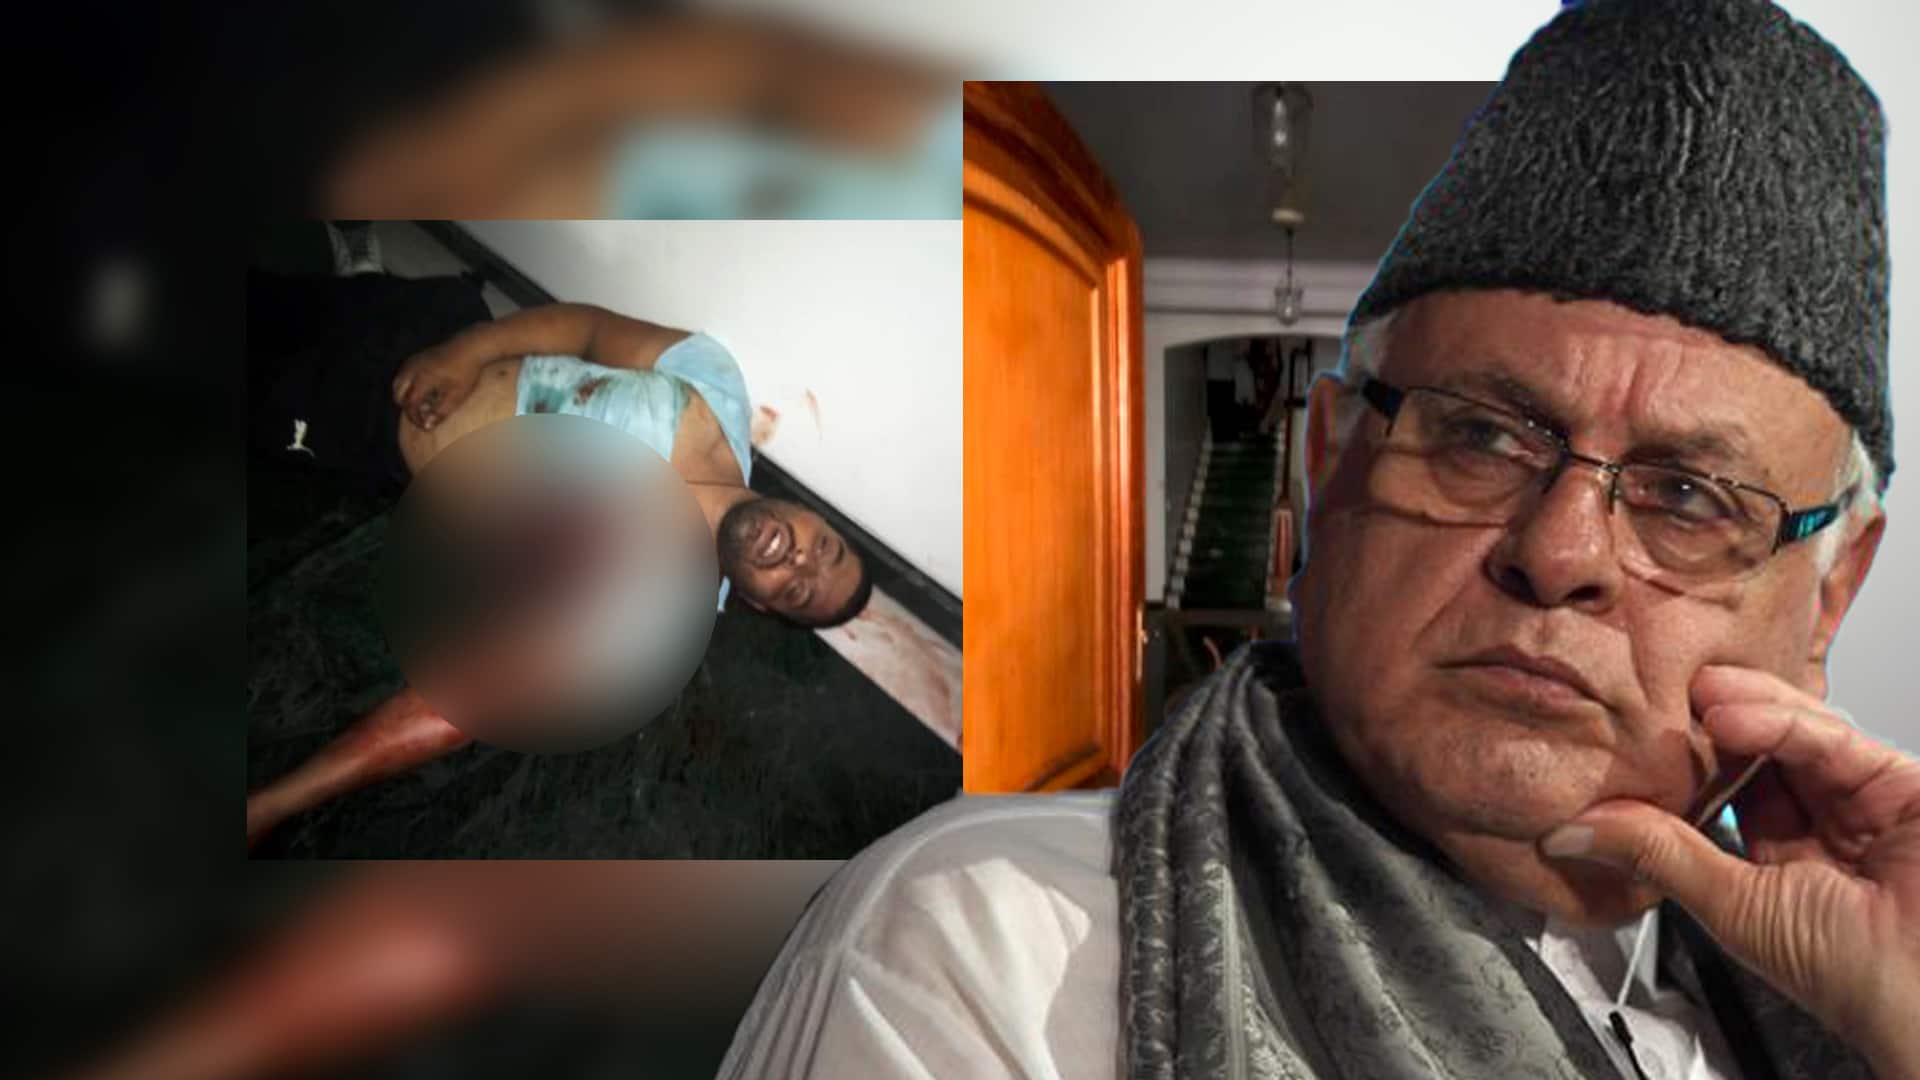 Intruder of farooq Abdullah home shot dead, sister cries revenge